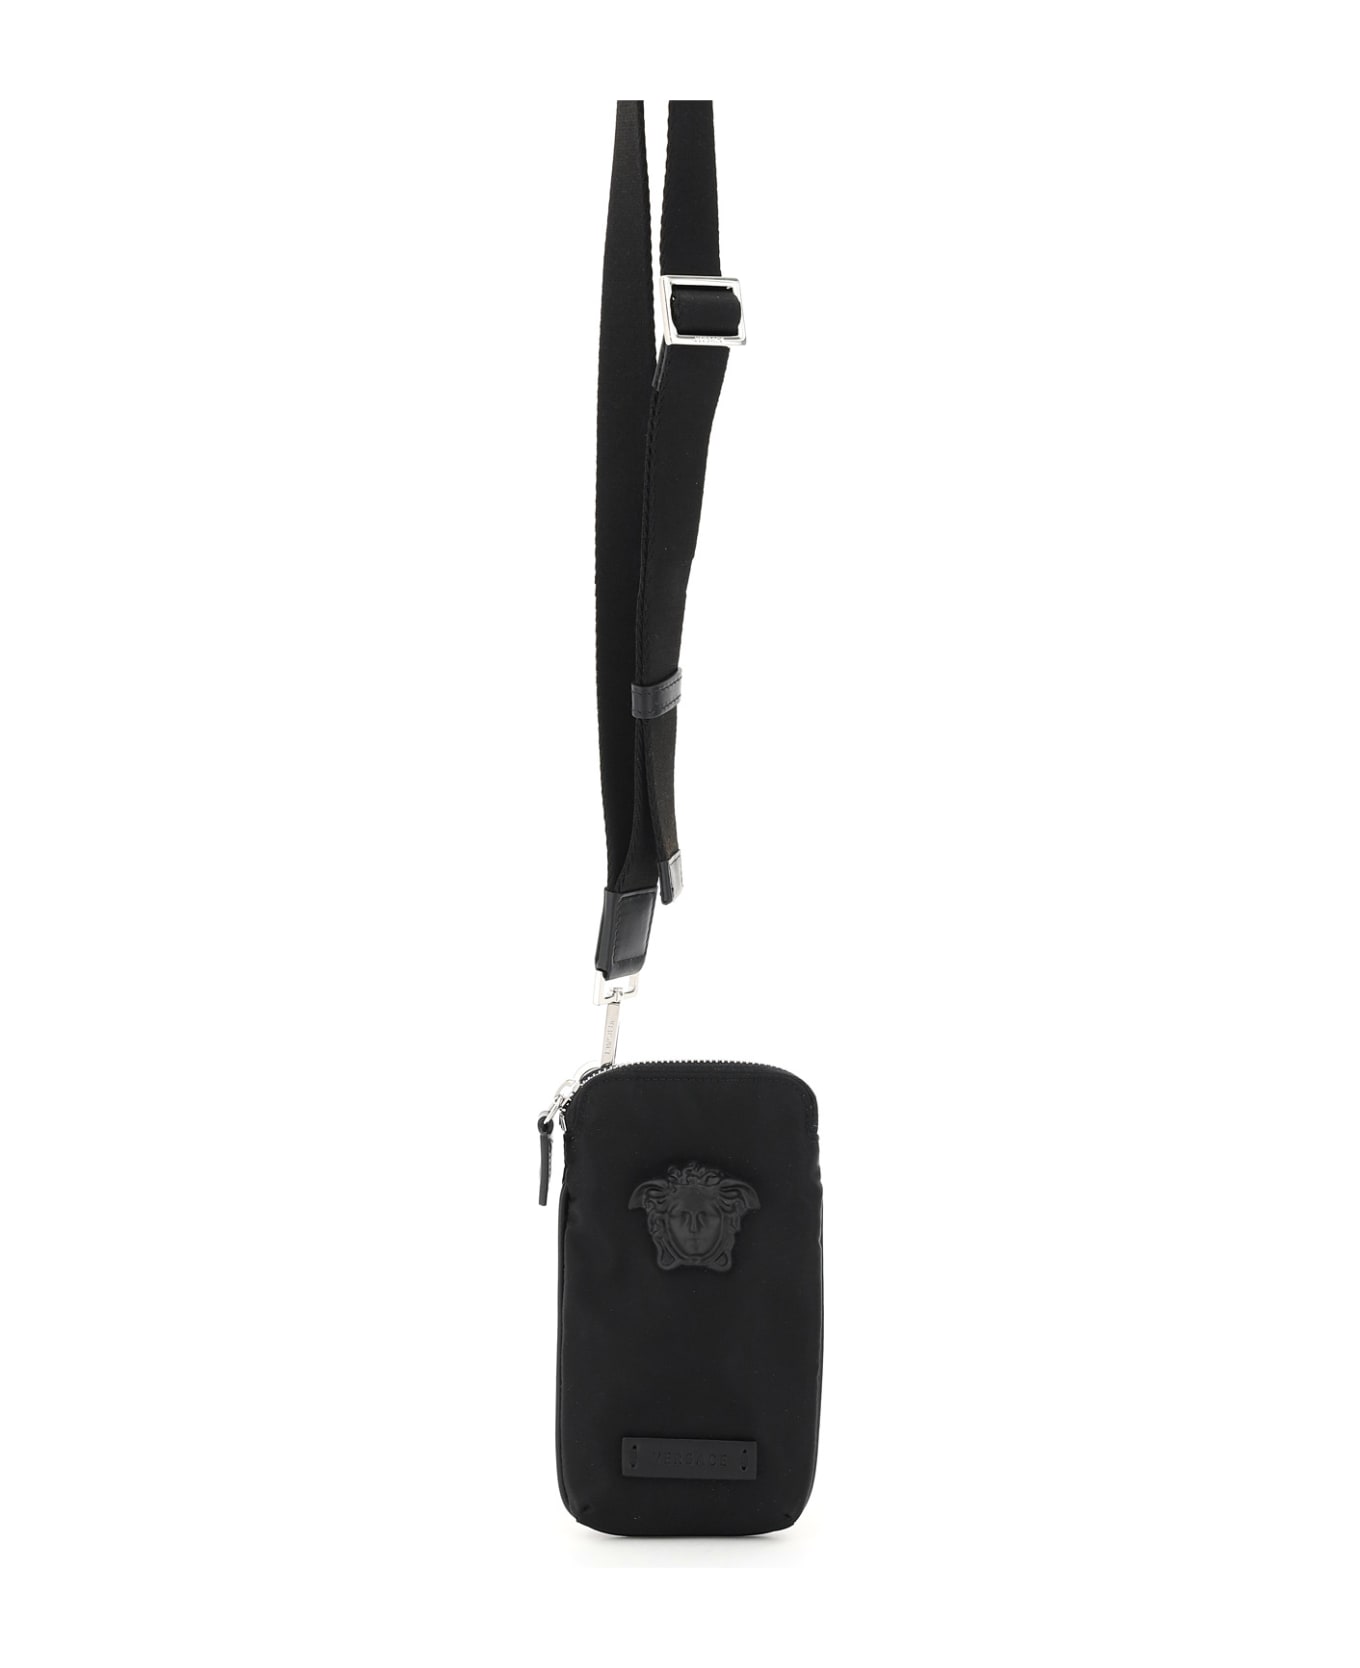 Versace La Medusa Nylon Mini Bag - NERO NERO PALLADIO (Black)